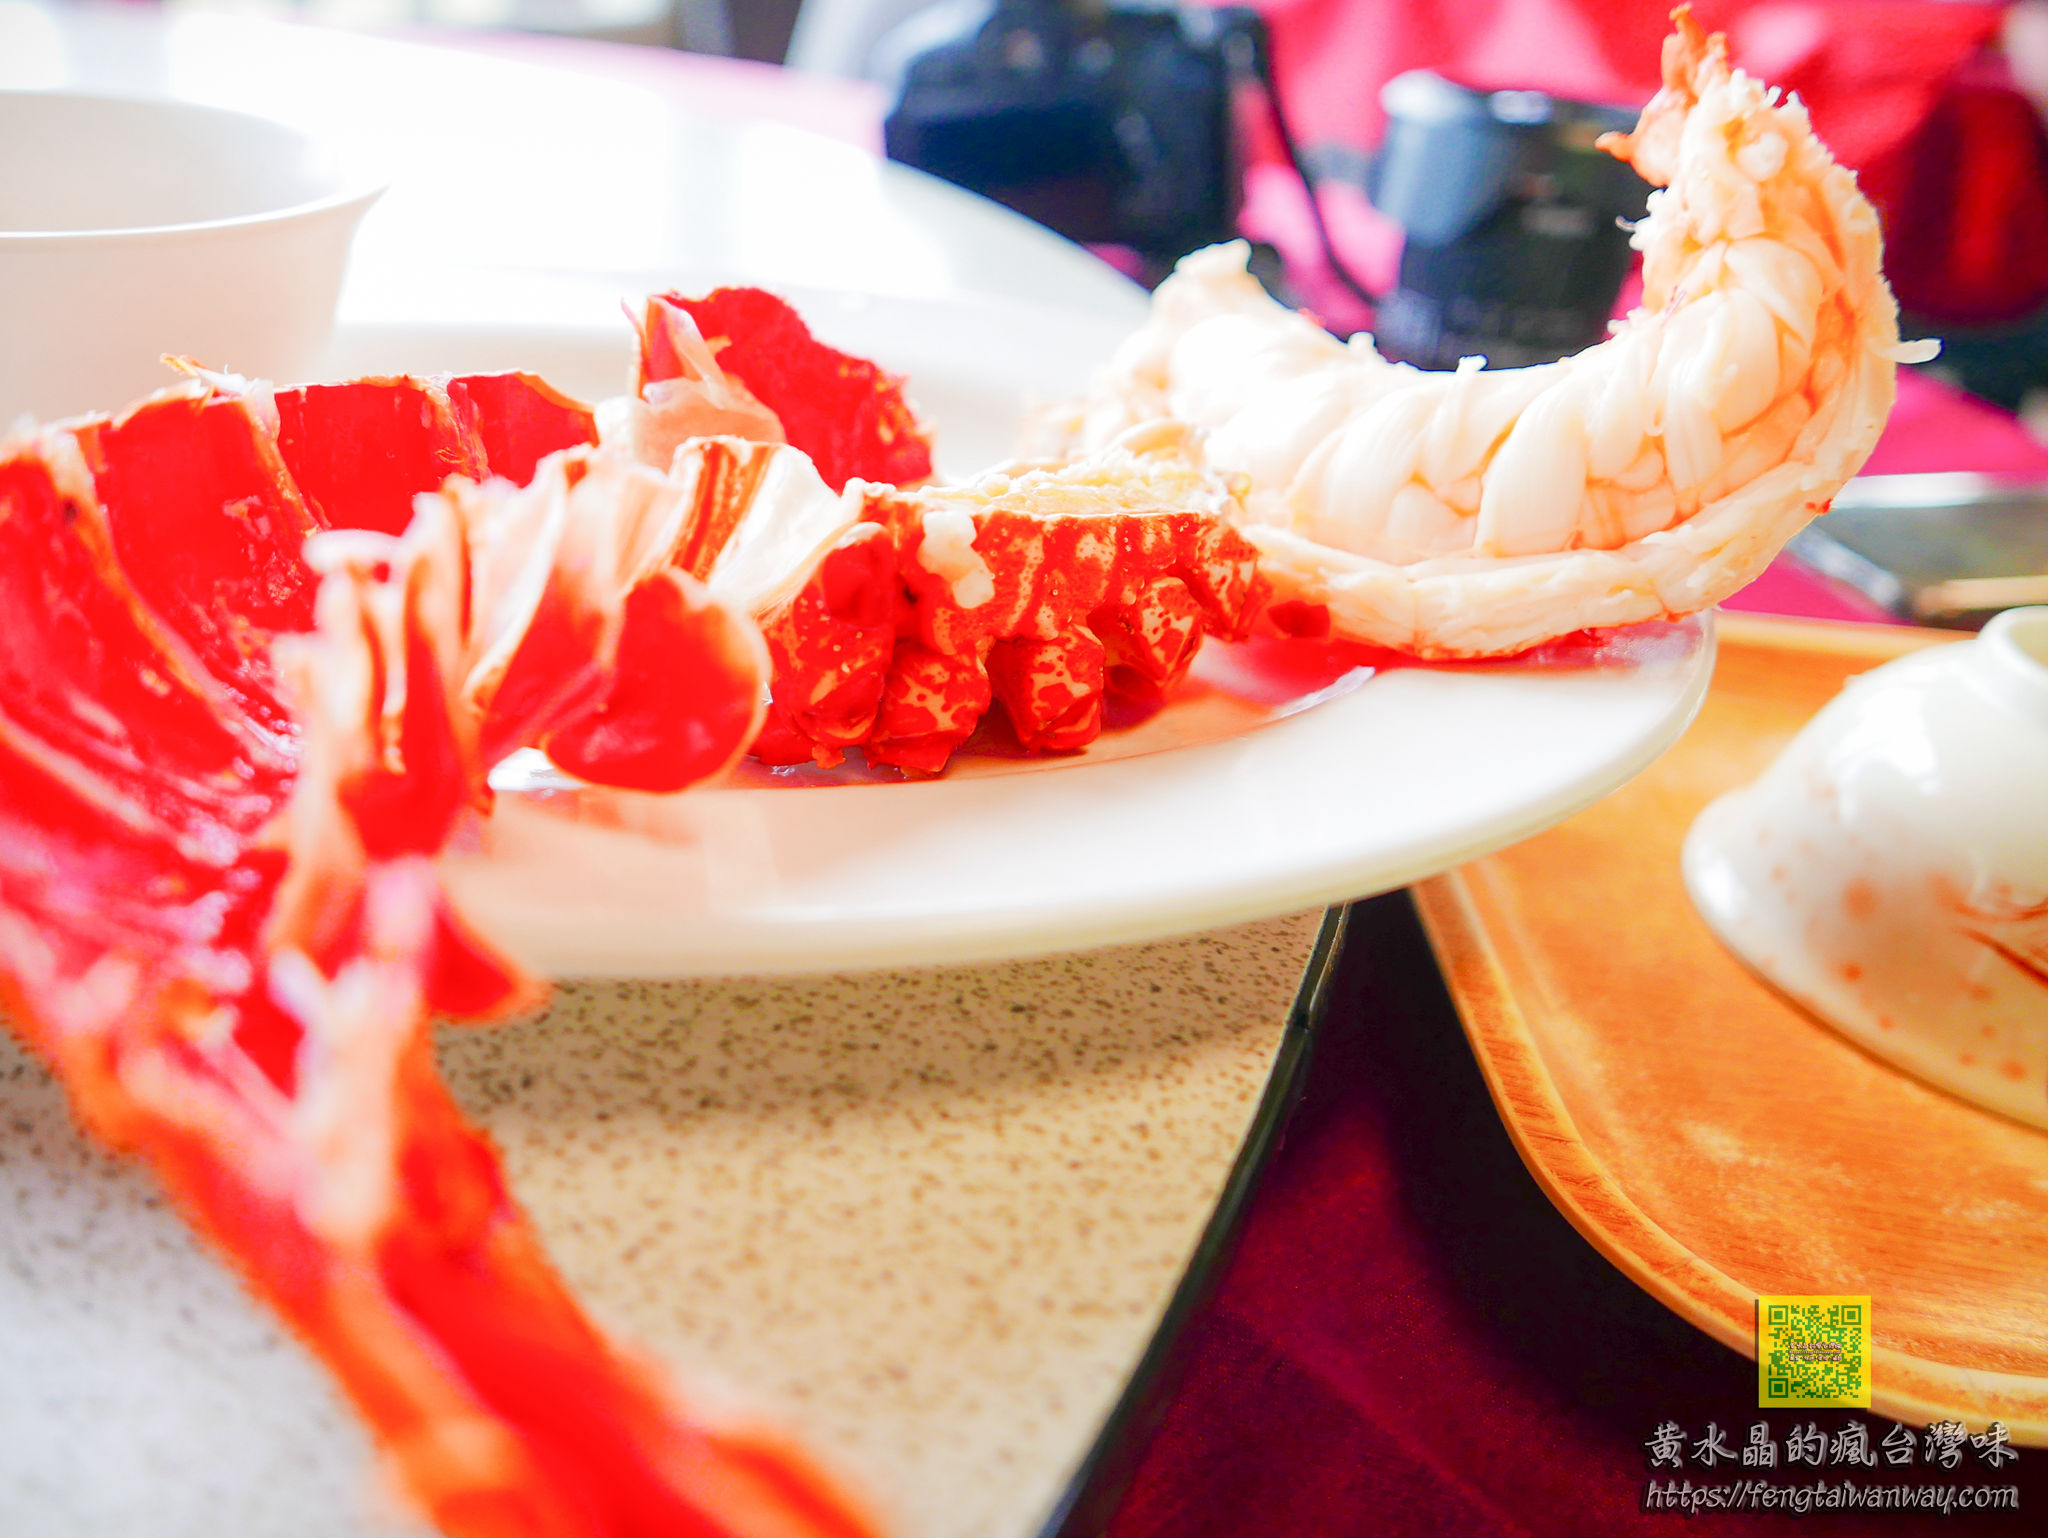 055龍蝦海鮮【花蓮美食】|壽豐台11線無敵海景第一排必吃超值龍蝦專門餐廳